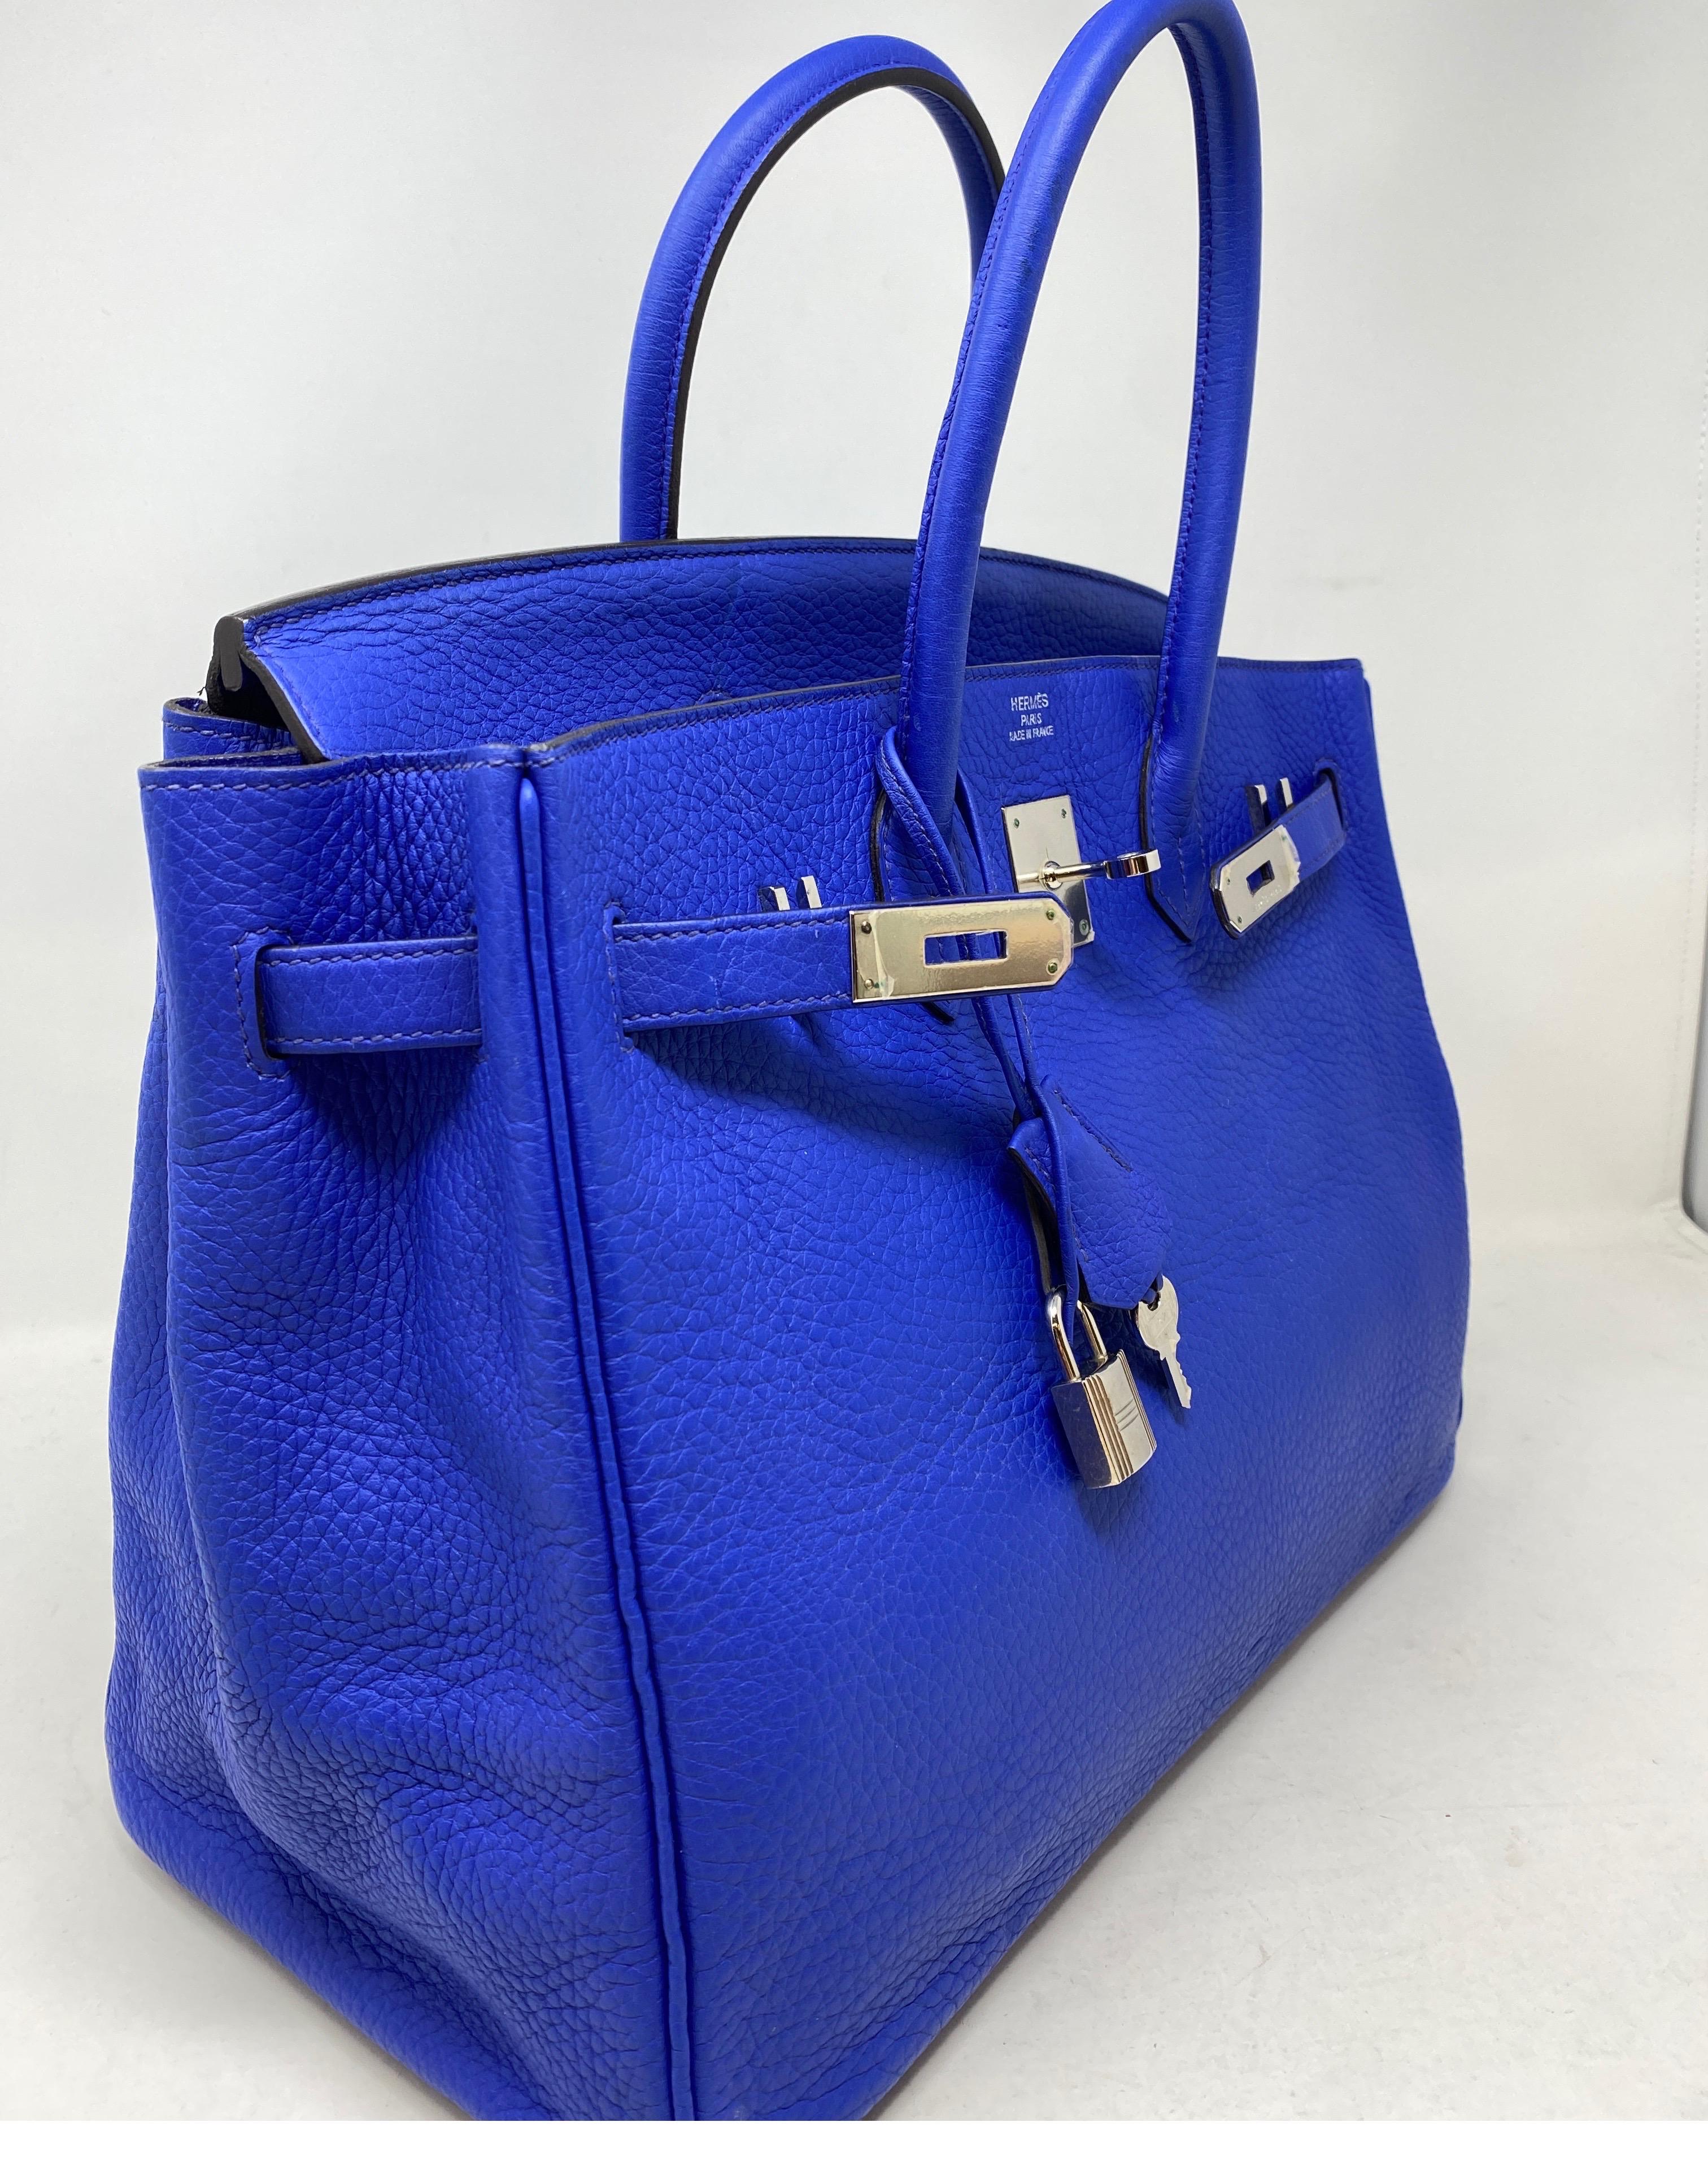 Hermes Birkin 35 Blue Electrique Bag 15